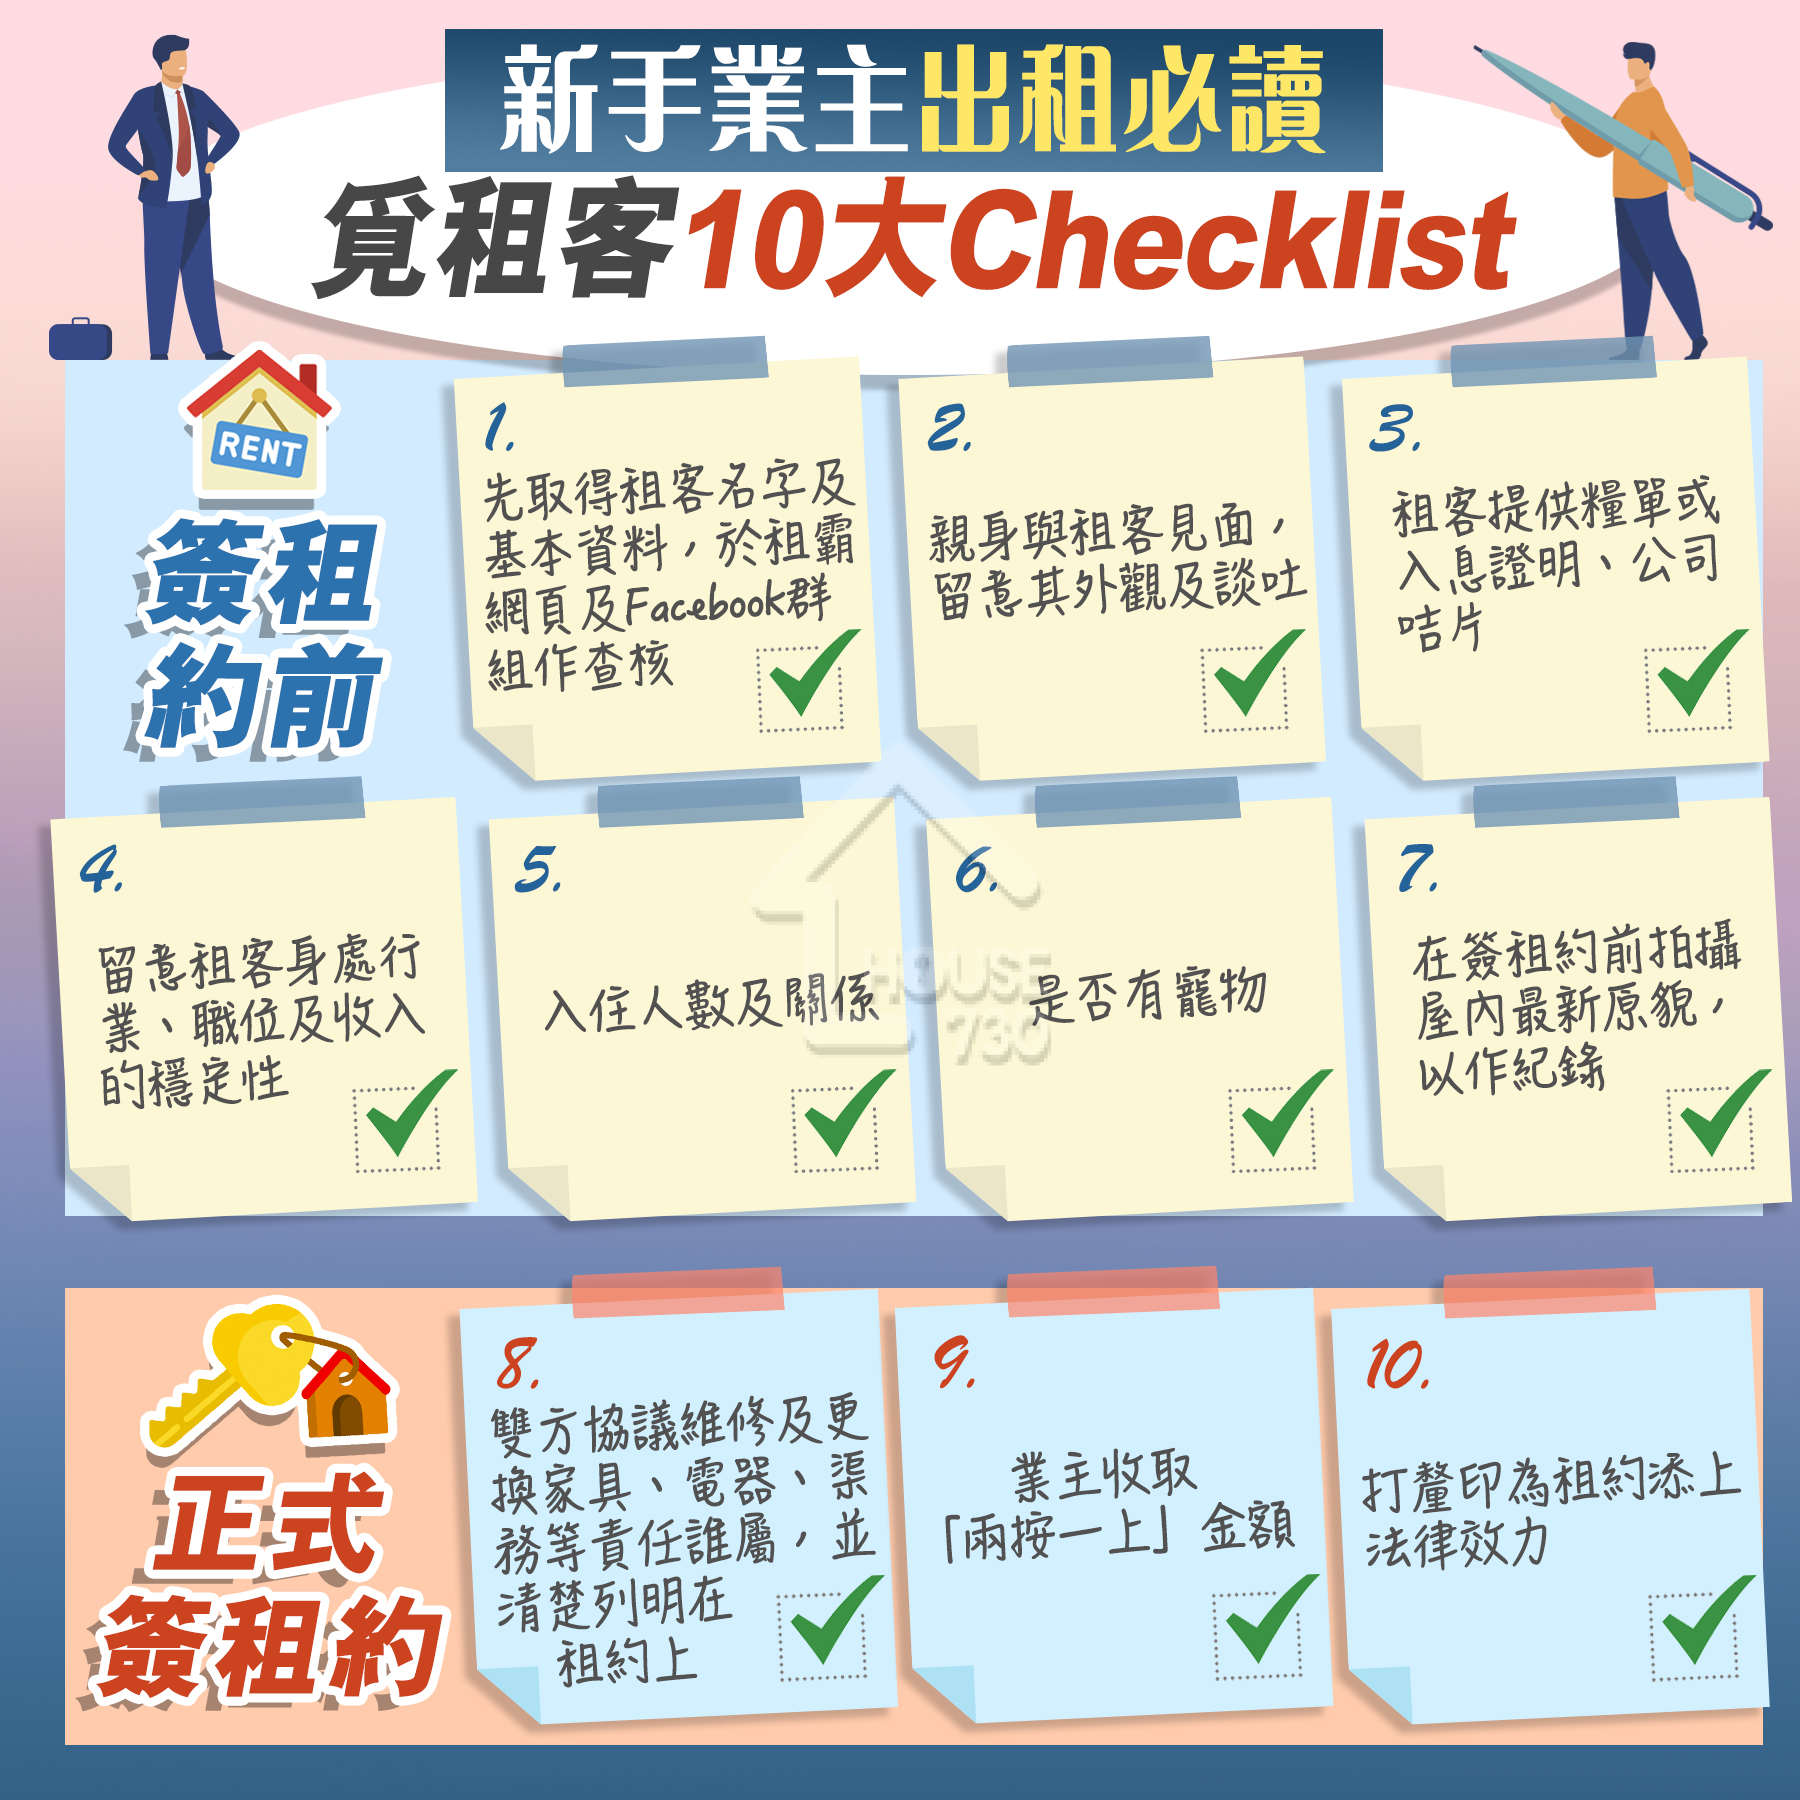 精明業主租客-【一圖看清】新手業主出租必讀  覓租客10大Checklist-House730